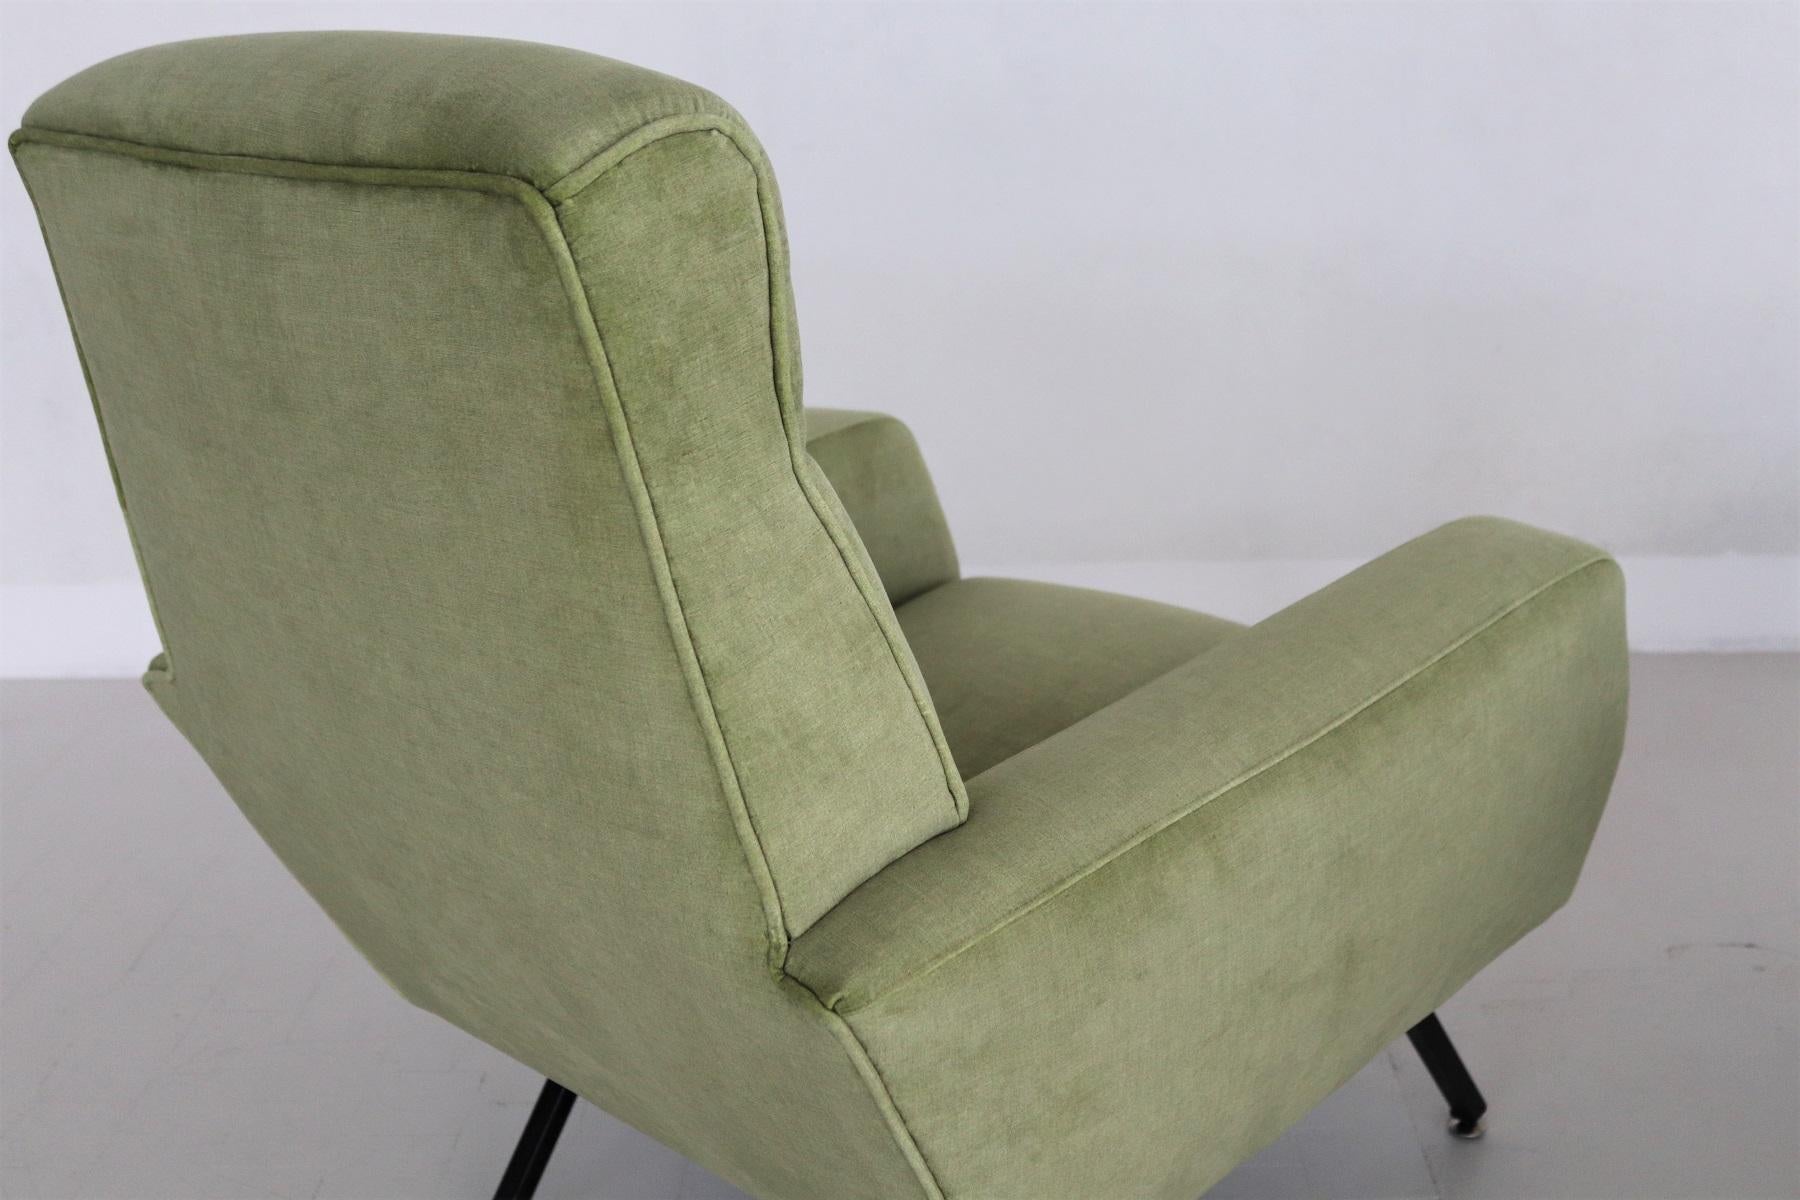 Italian Midcentury Armchairs Re-Upholstered in Green Velvet, 1960s For Sale 6